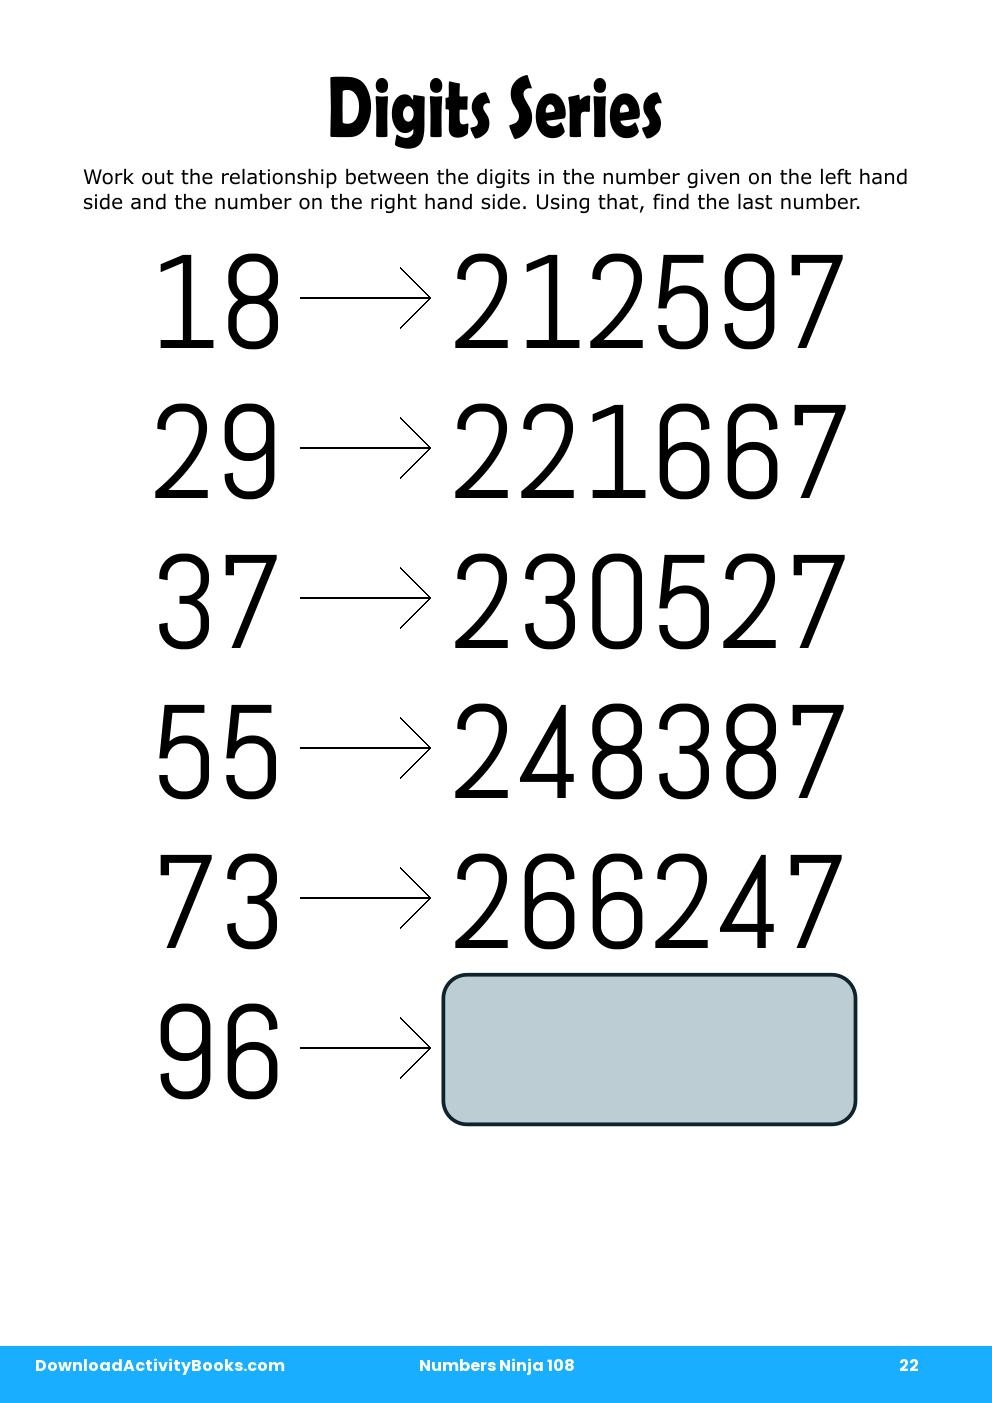 Digits Series in Numbers Ninja 108